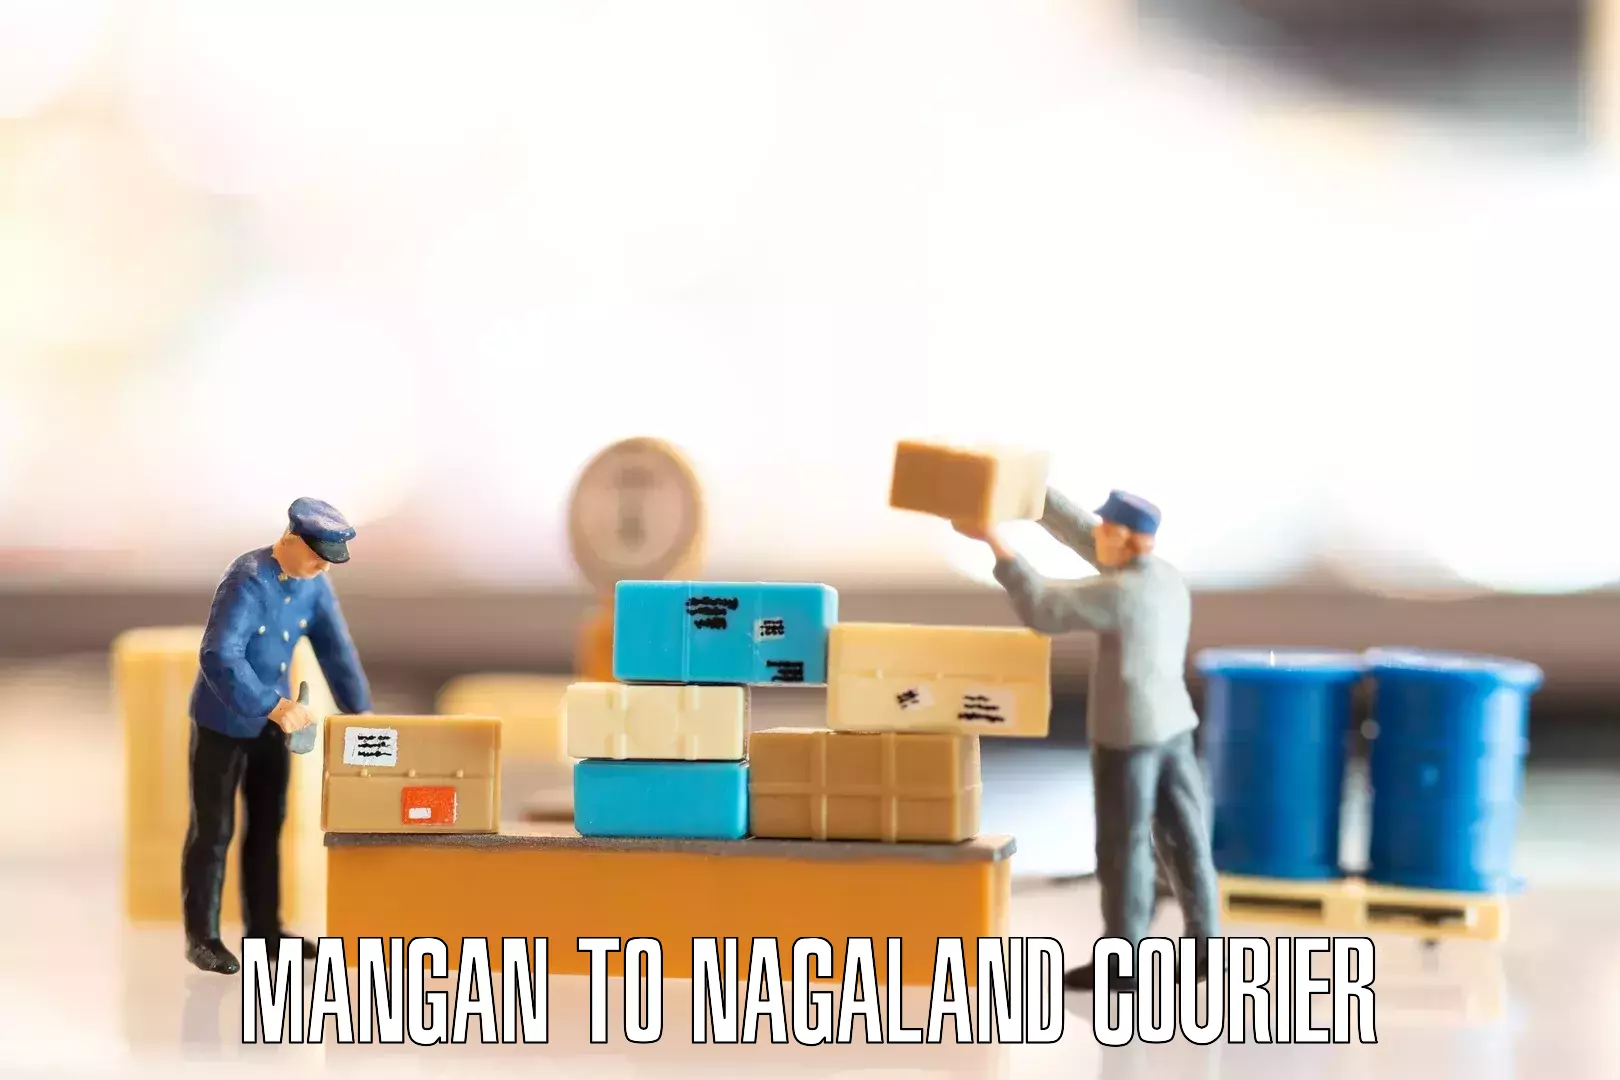 Furniture transport solutions in Mangan to Longleng